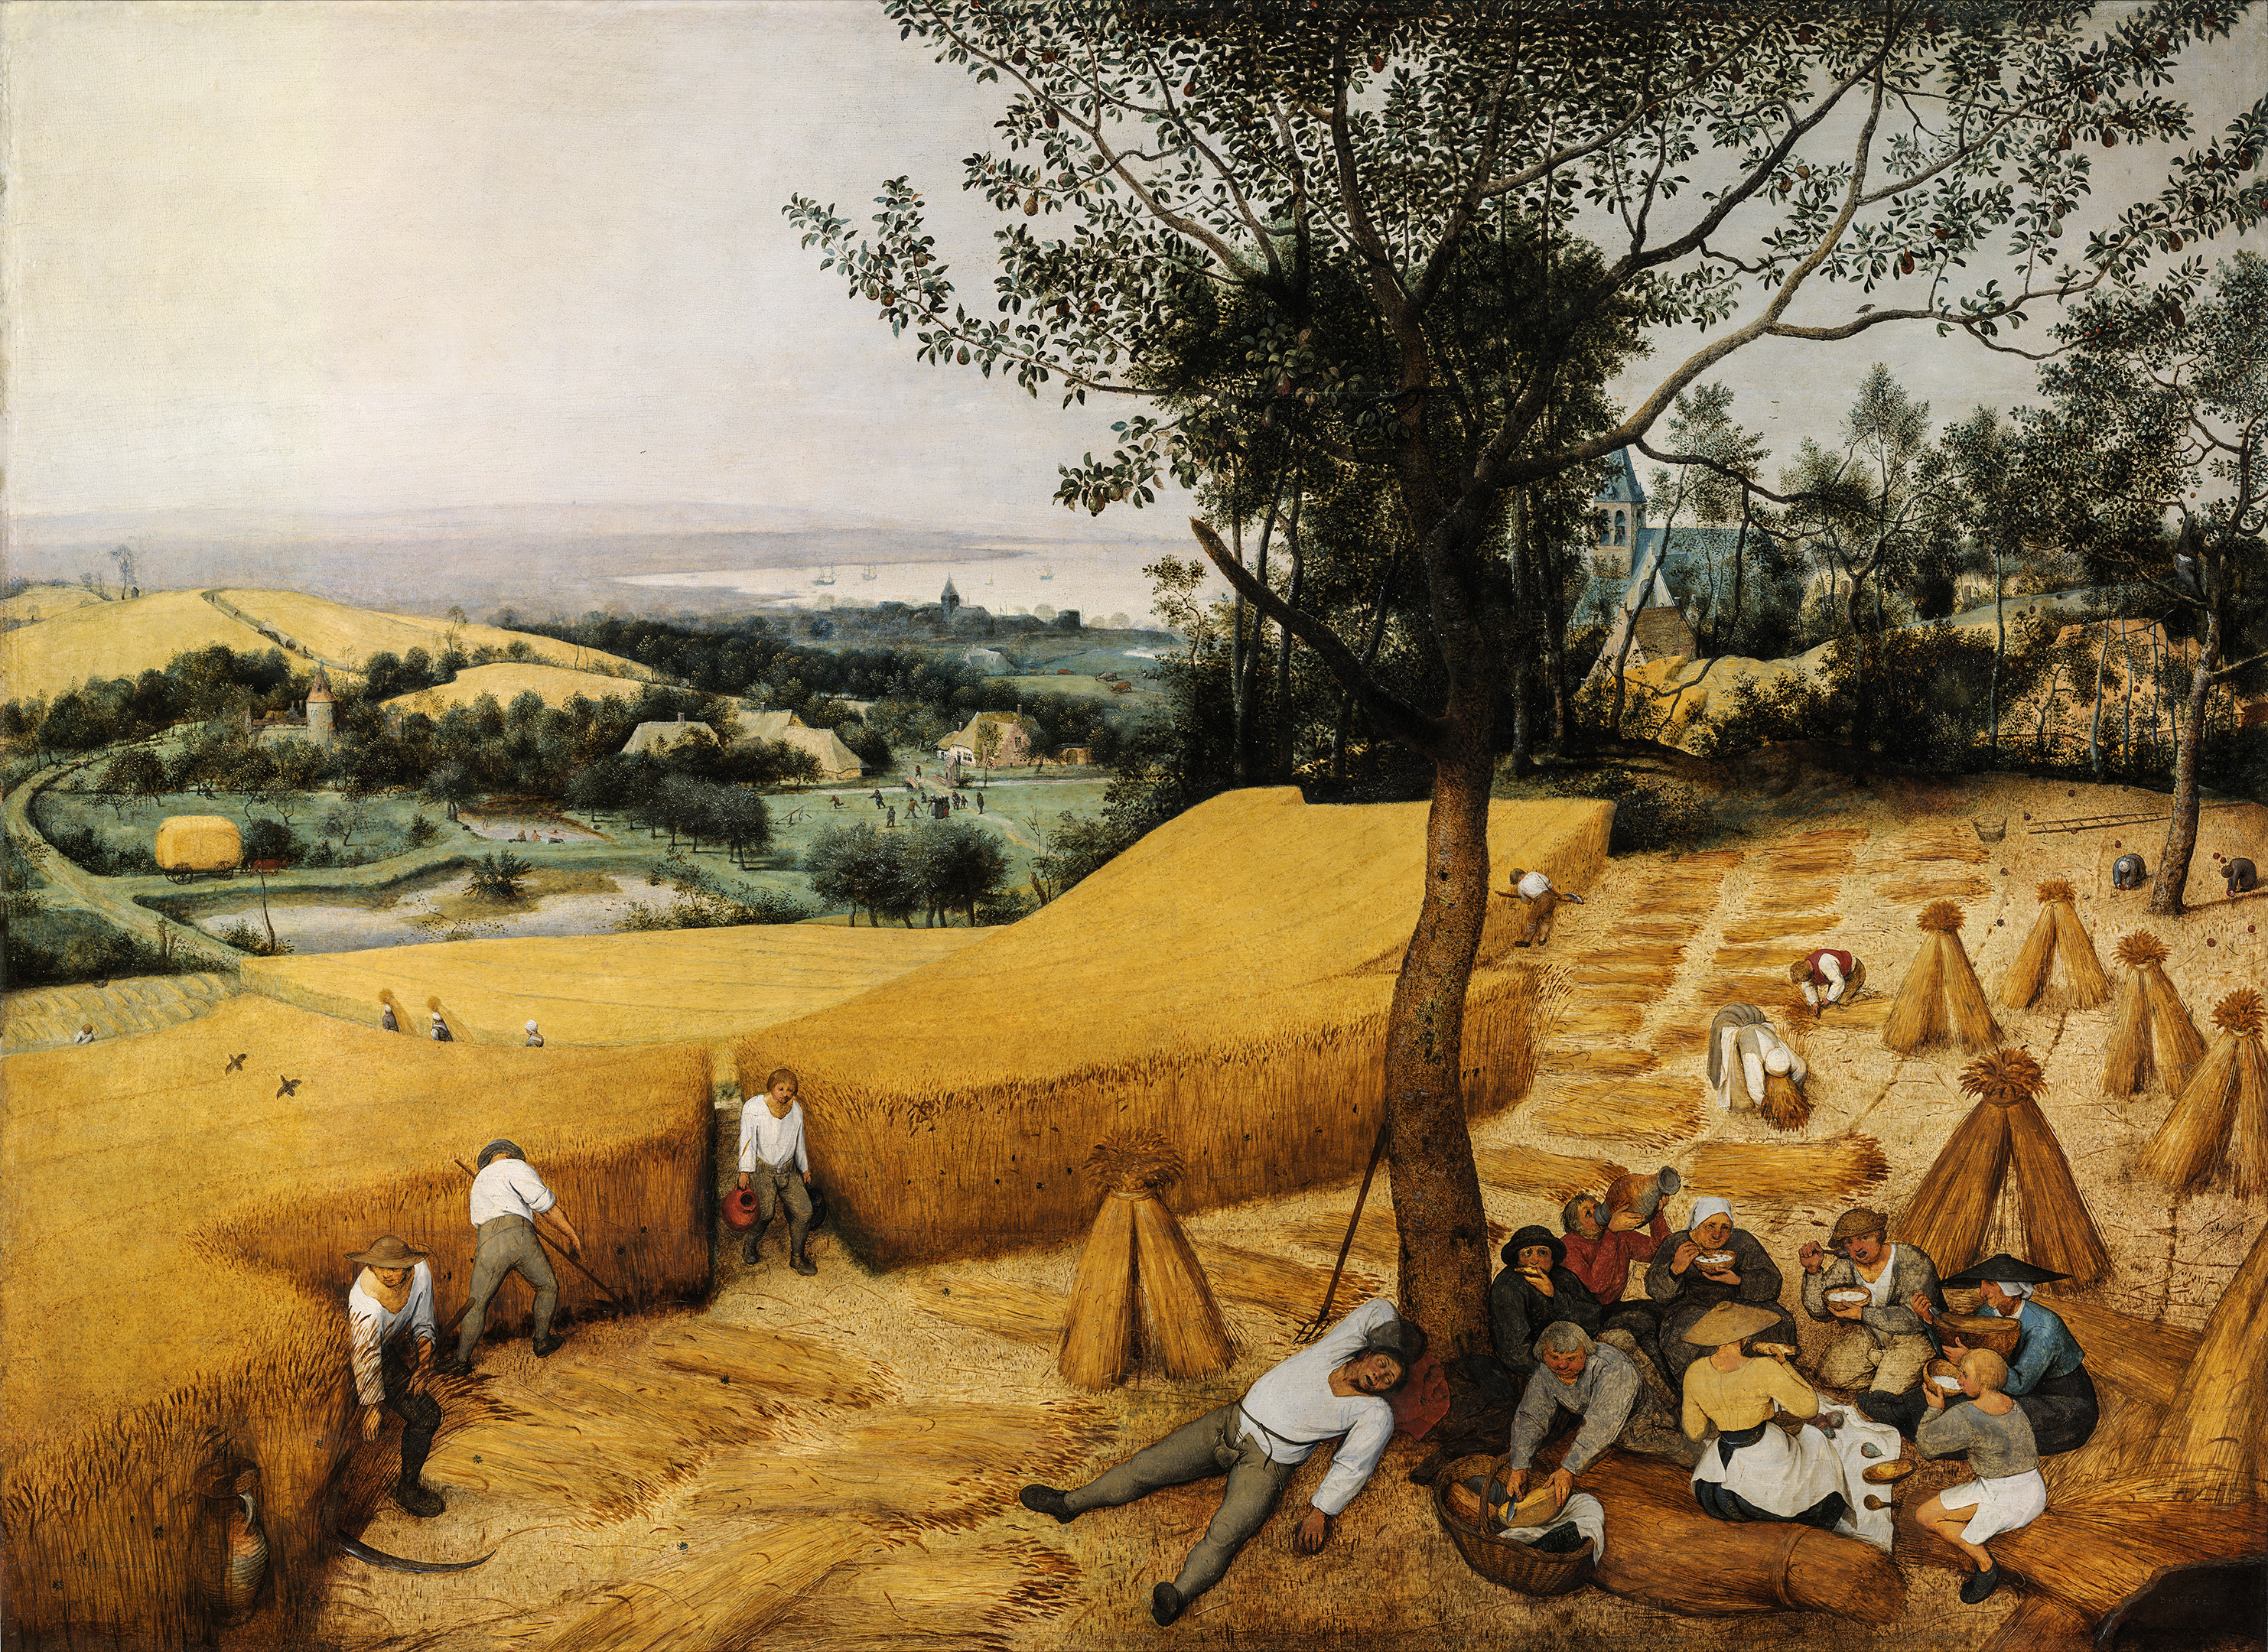 Pieter Bruegel the Elder - The Harvesters (1565) by Pieter Bruegel the Elder